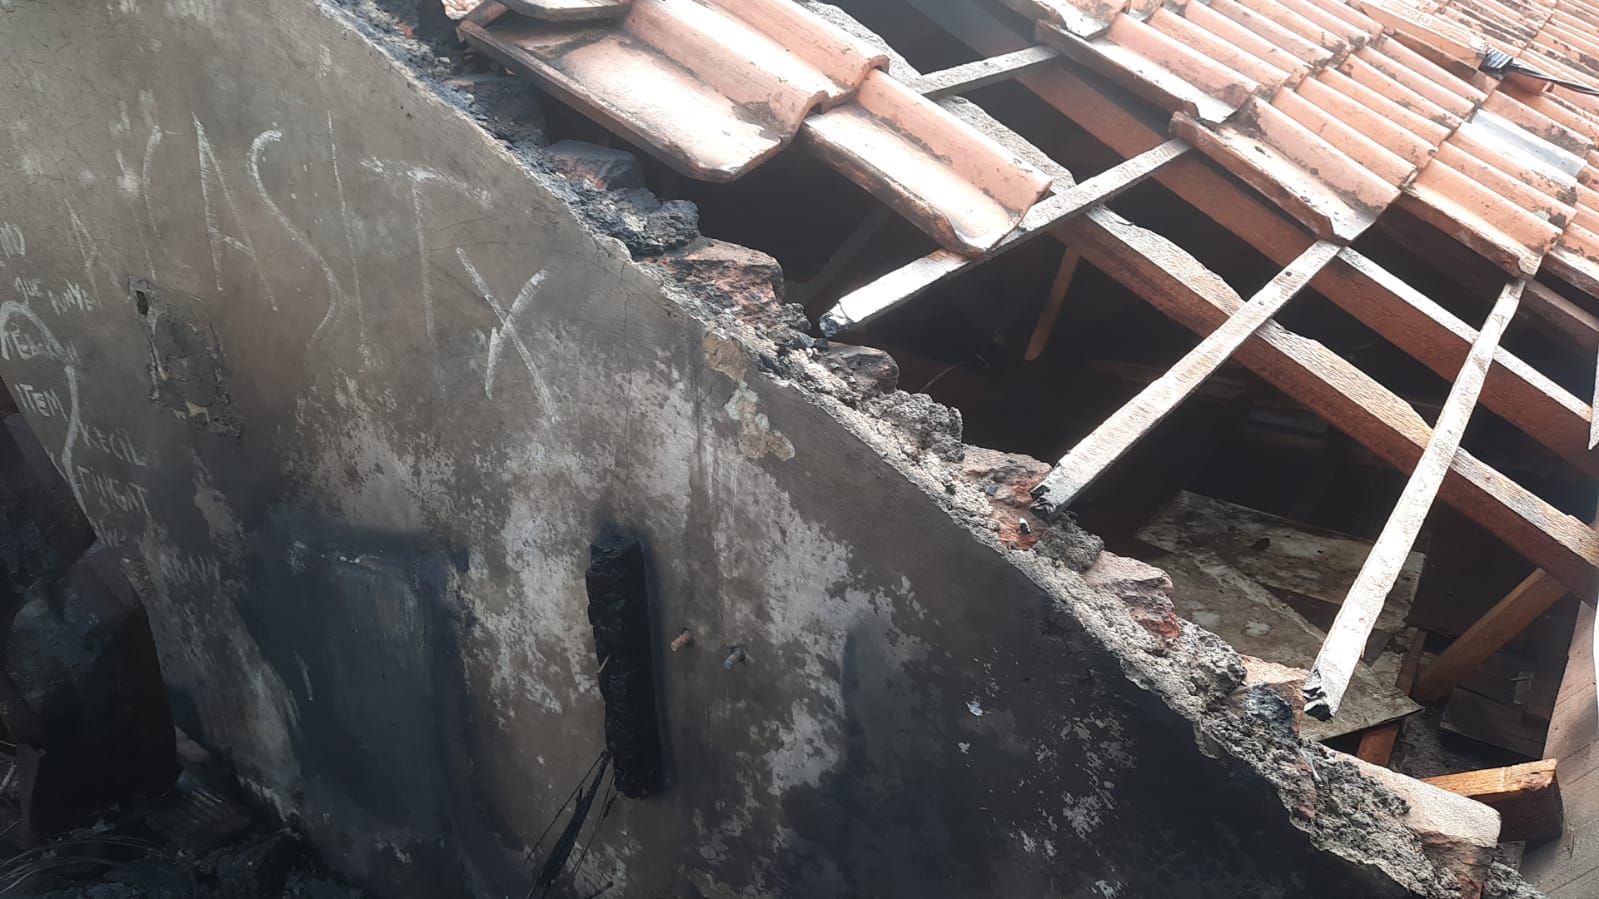 Atap rumah di Jalan Sindangsari Kelurahan Cipadung Kulon, Kecamatan Panyileukan Kota Bandung rusak berat dilahap api pada MInggu, 29 Mei 2022.